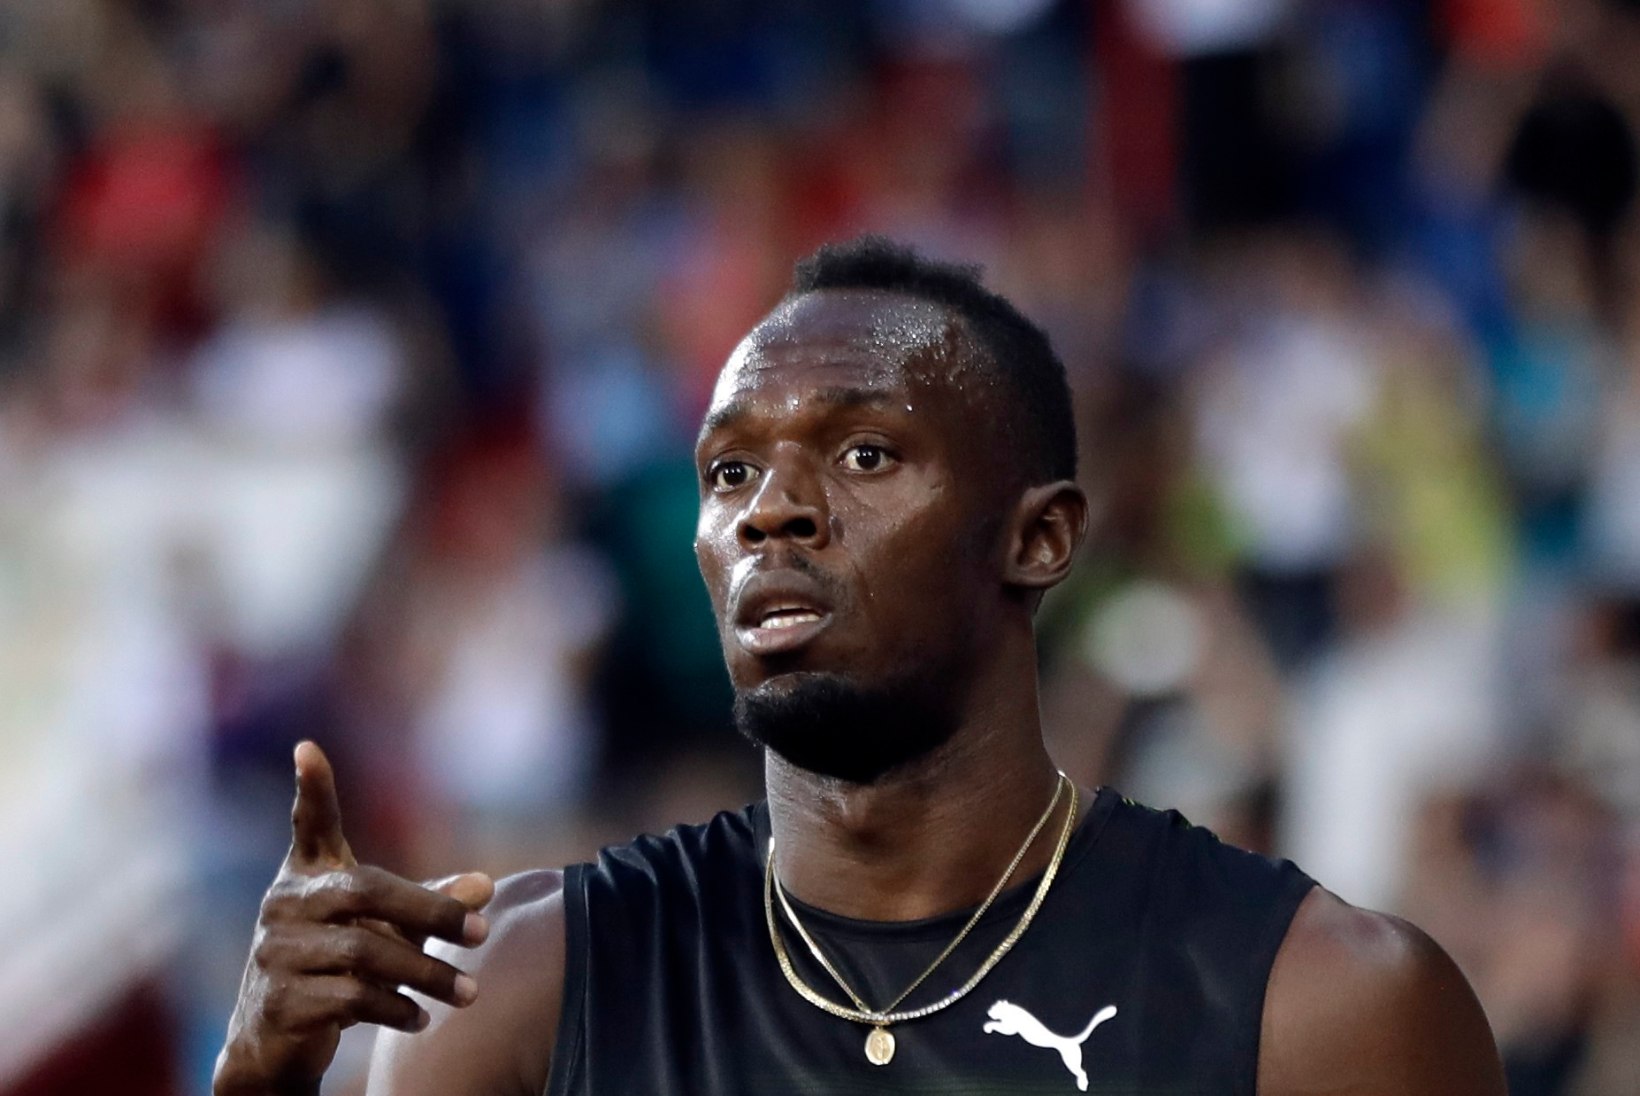 VORM ON TÕUSUTEEL! Usain Bolt alistas tänavu esimest korda kümne sekundi piiri